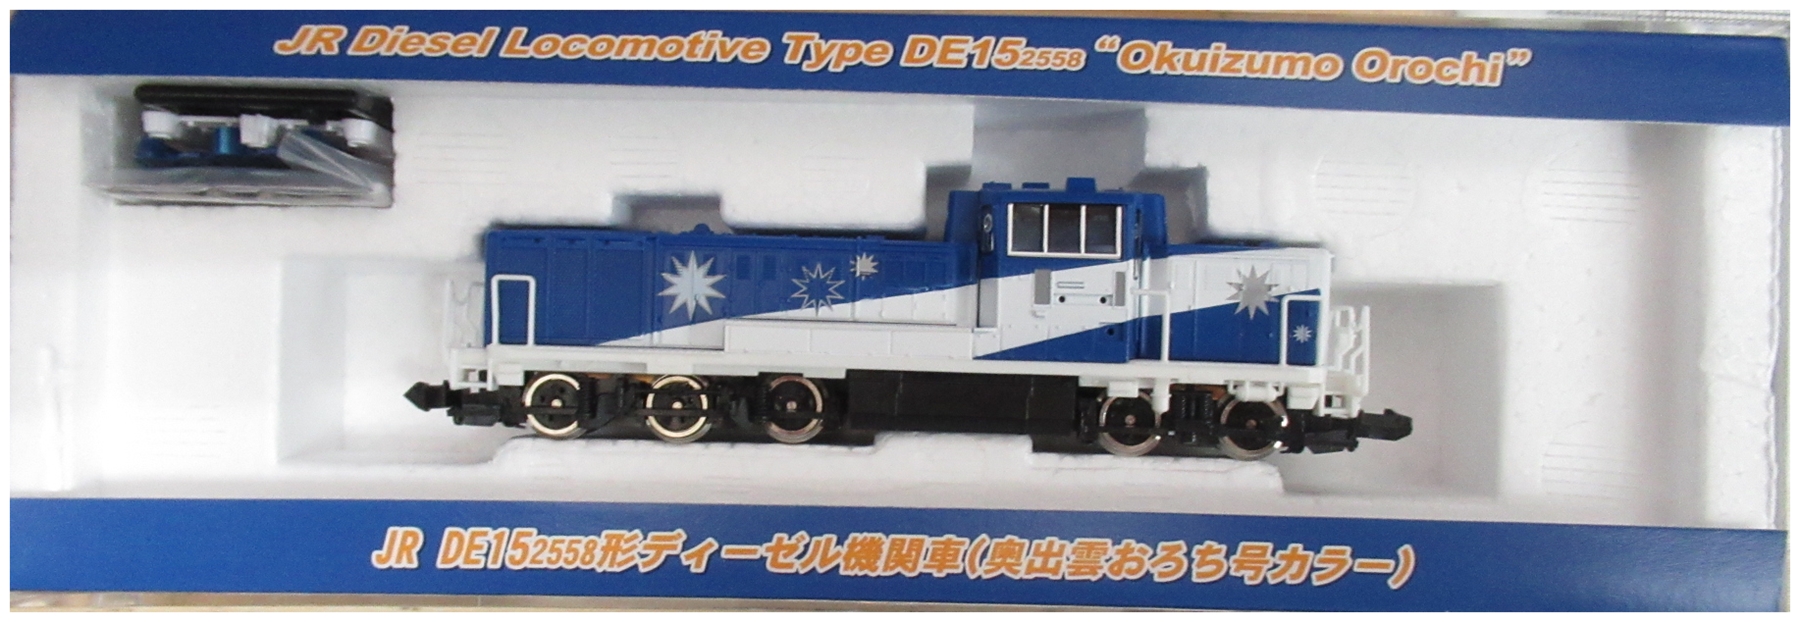 公式]鉄道模型(93122JR DE15 2558形ディーゼル機関車 (奥出雲おろち号